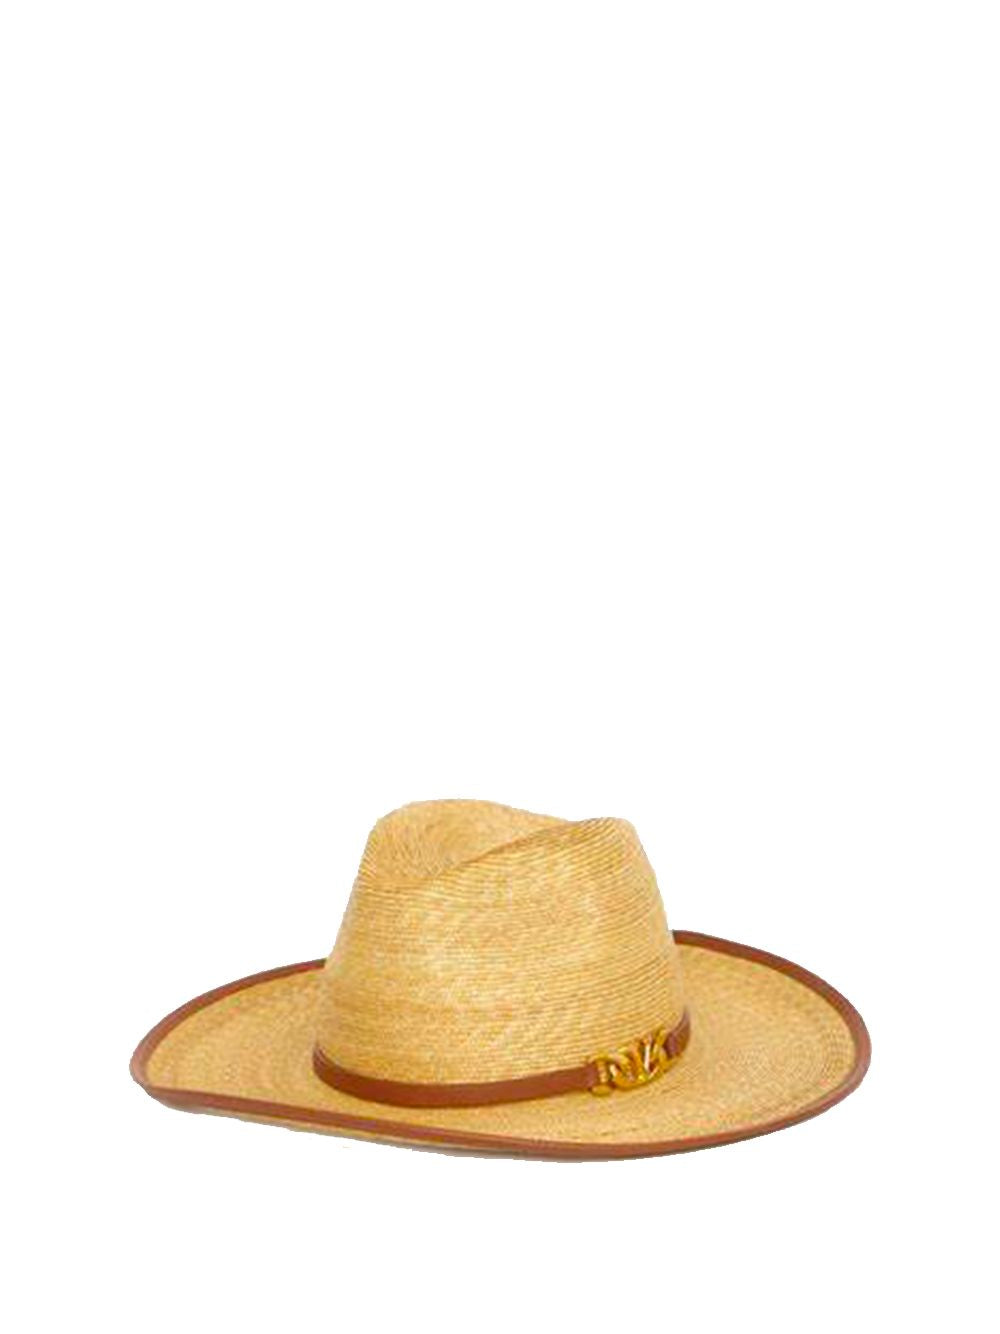 Mũ nón chải mặt Ruy băng Vlogo cho phụ nữ - beige